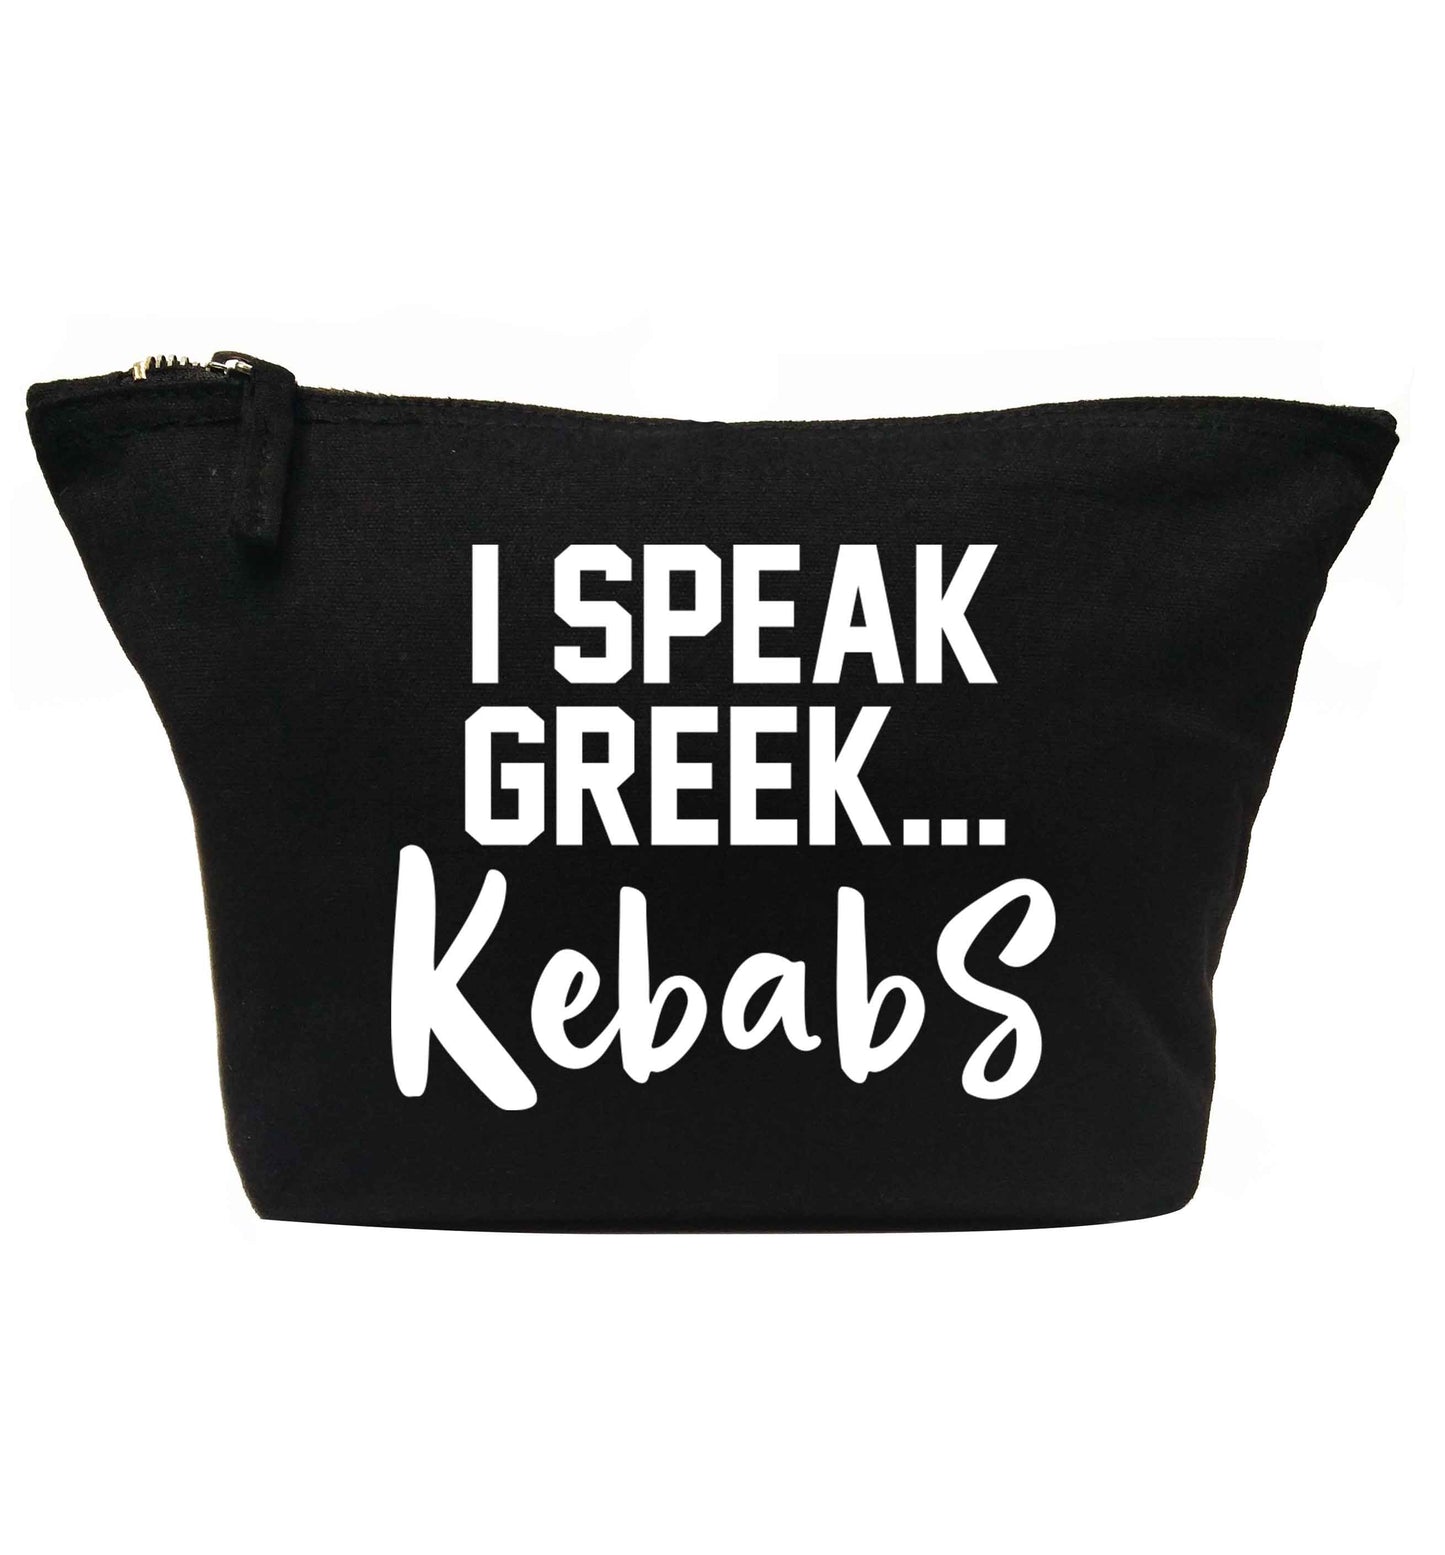 I speak Greek...kebabs | makeup / wash bag